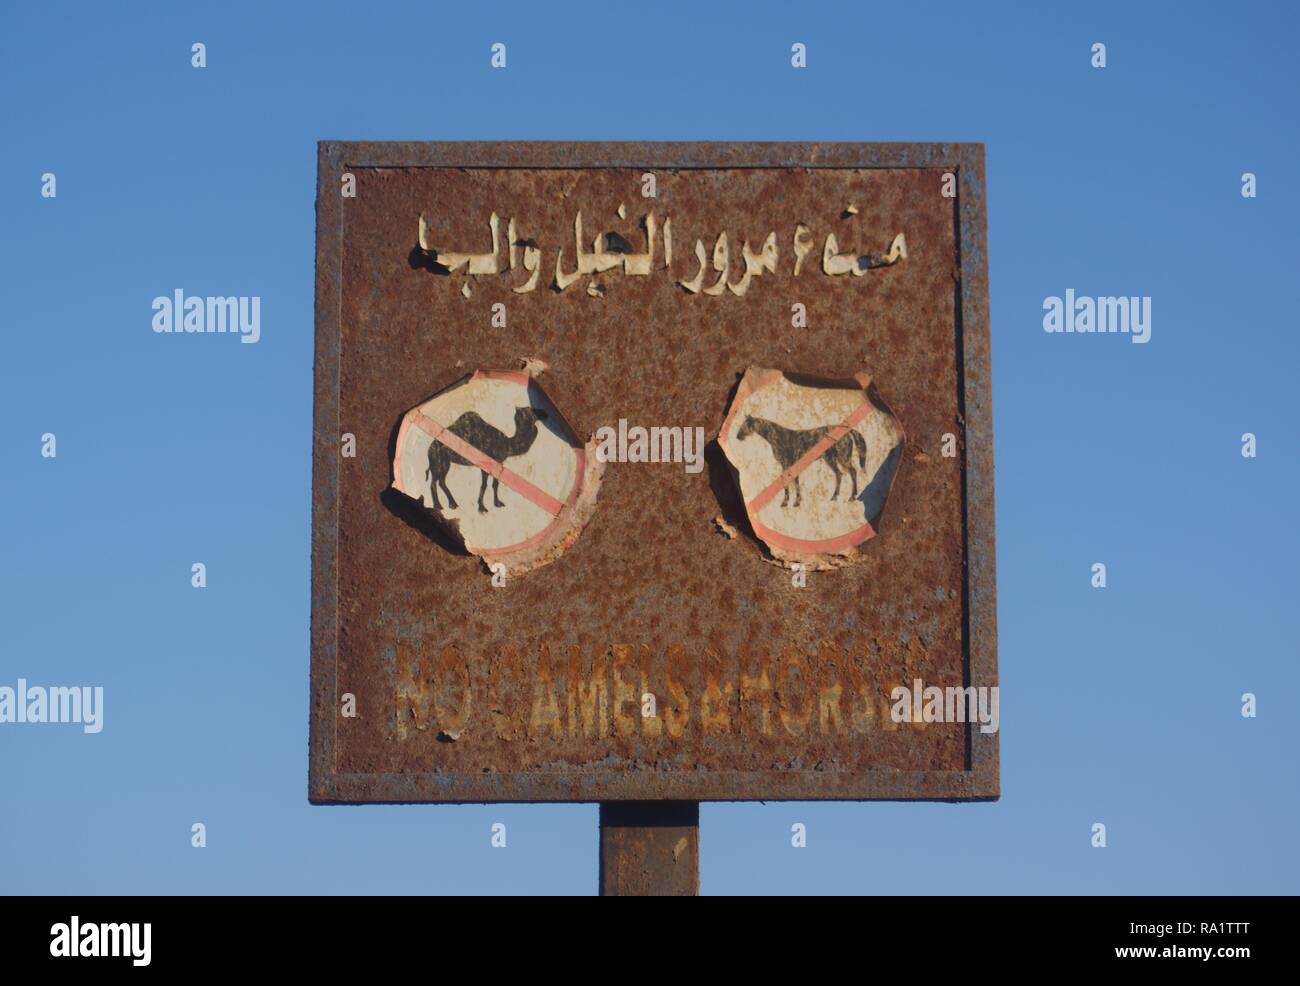 Pas de chameaux pas de chevaux signe à plage, Dahab, Egypte Banque D'Images